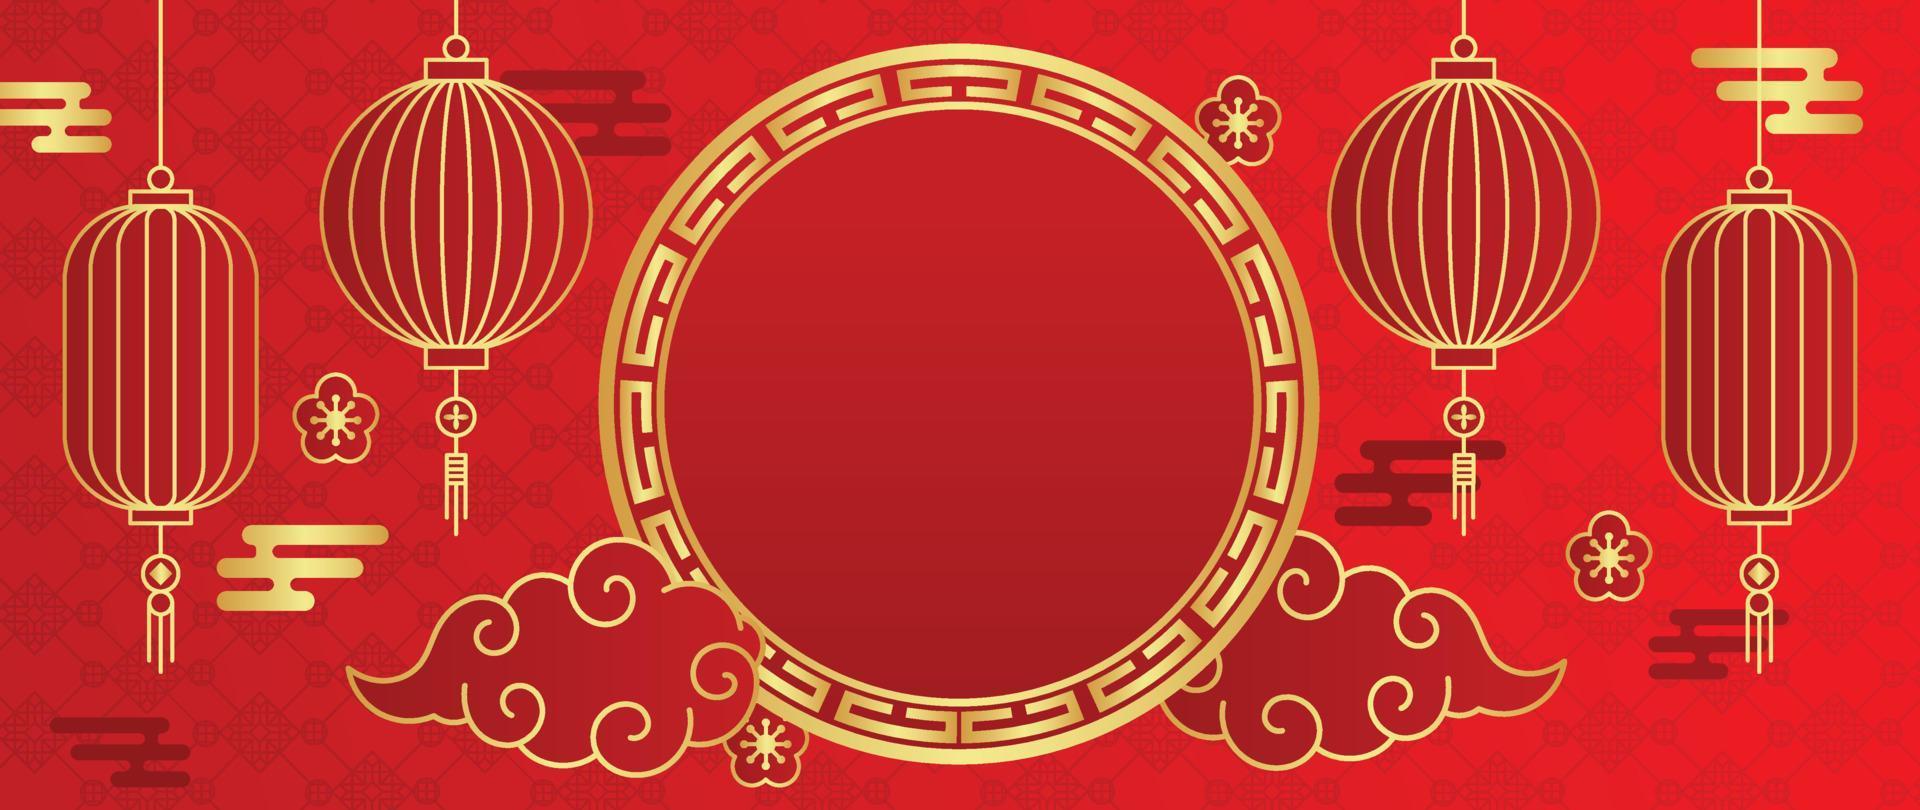 vecteur de fond de modèle de style de luxe oriental japonais et chinois. lanterne dorée, fleur, cadre circulaire et nuage sur fond rouge motif chinois. illustration de conception pour papier peint, carte, affiche.